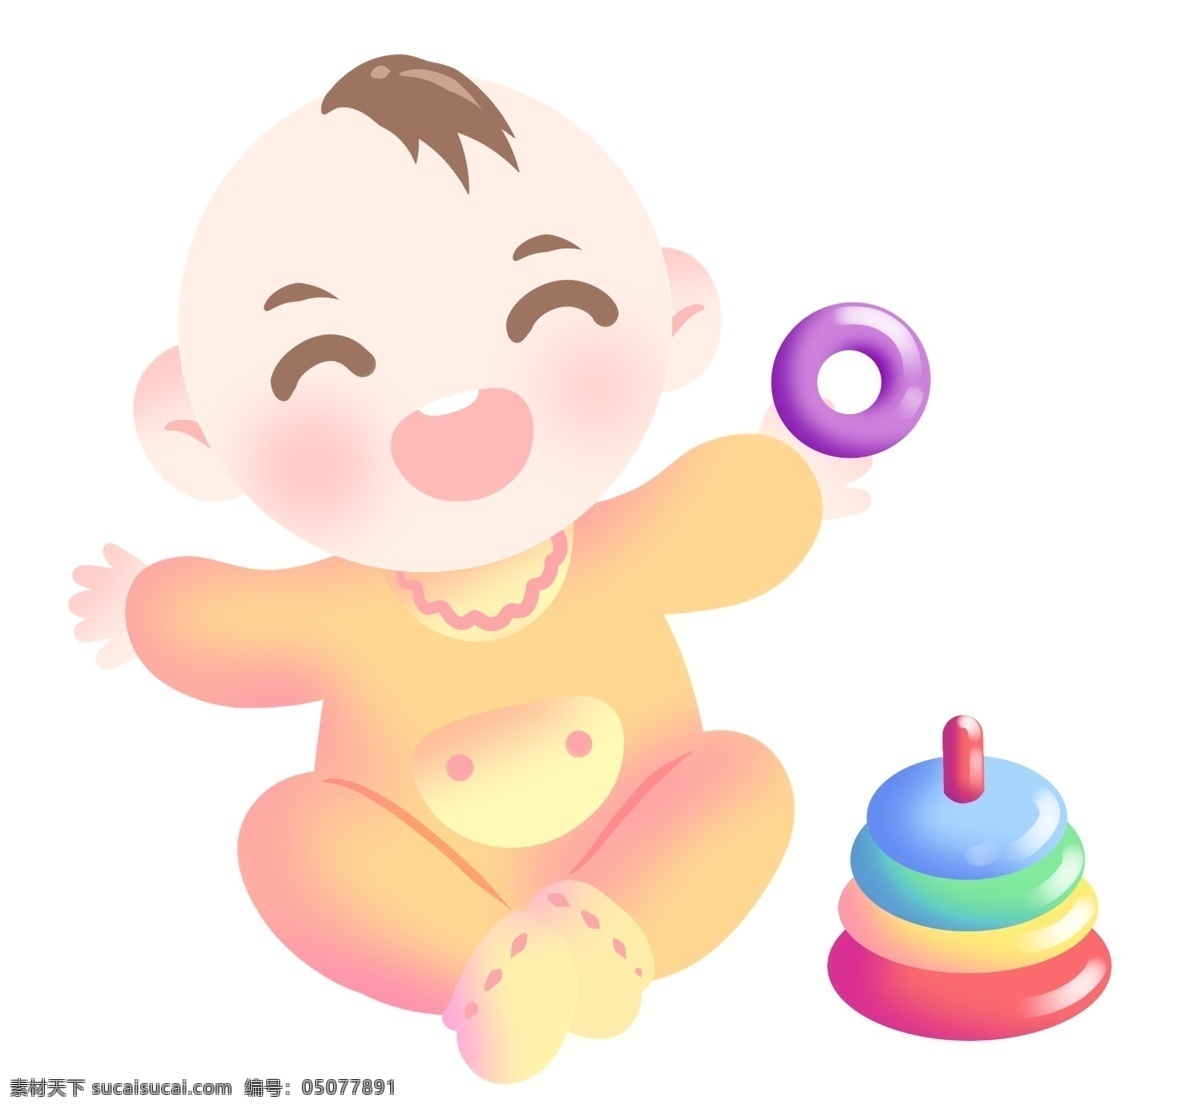 玩 玩具 婴儿 宝贝 插画 彩色的玩具 卡通插画 婴儿插画 宝贝插画 可爱宝贝 婴儿宝贝 婴儿的玩具